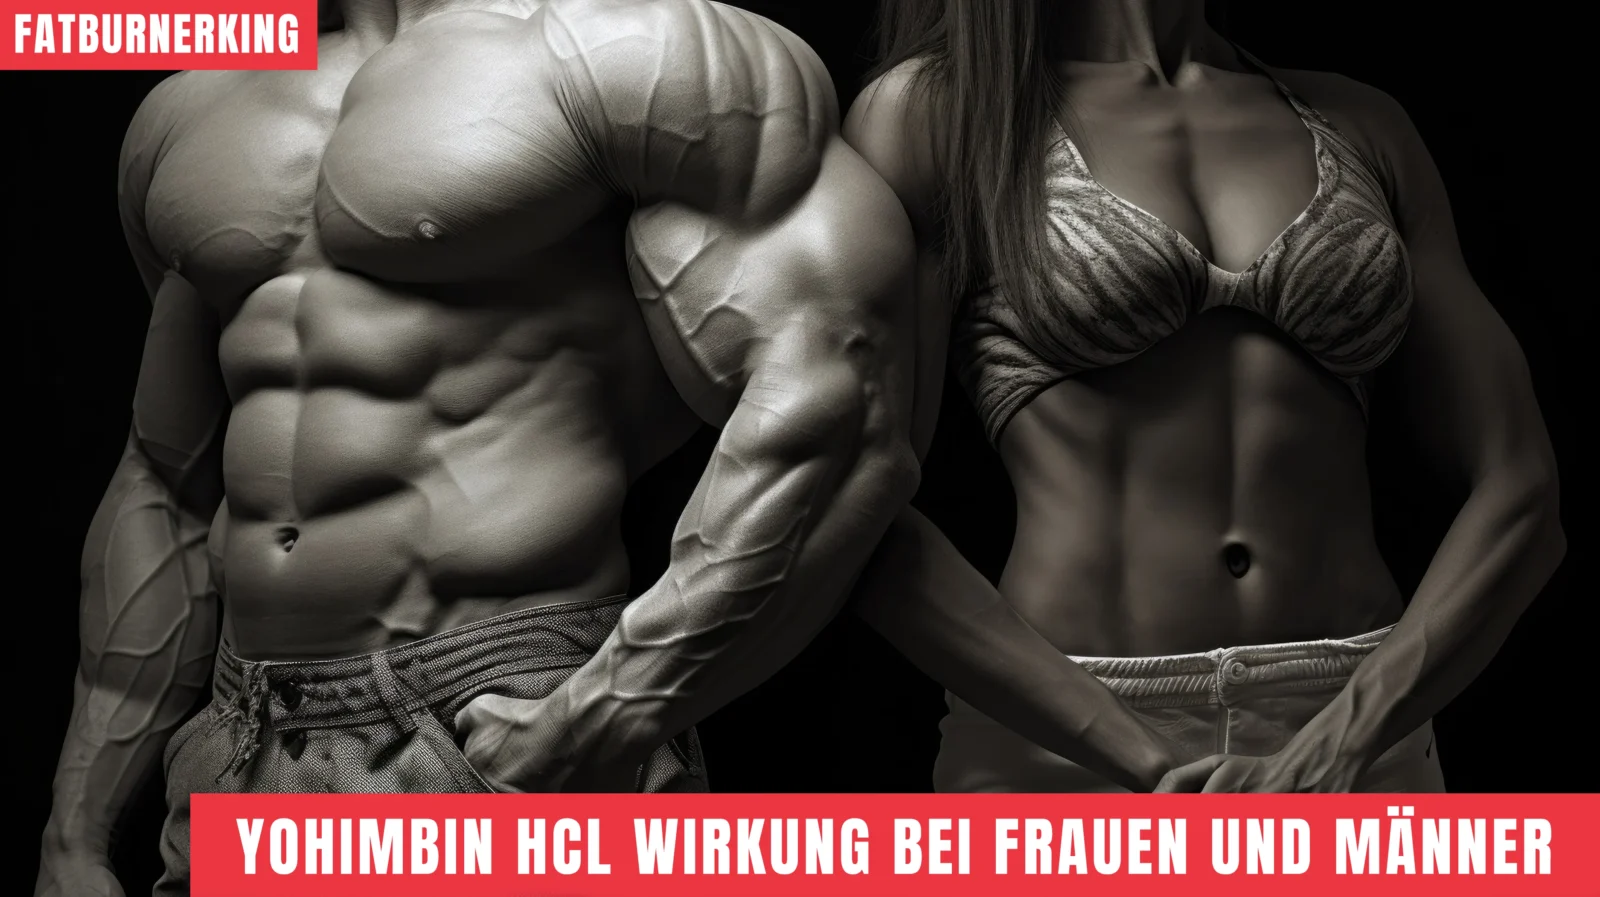 Efecto de la yohimbina HCL en mujeres y hombres